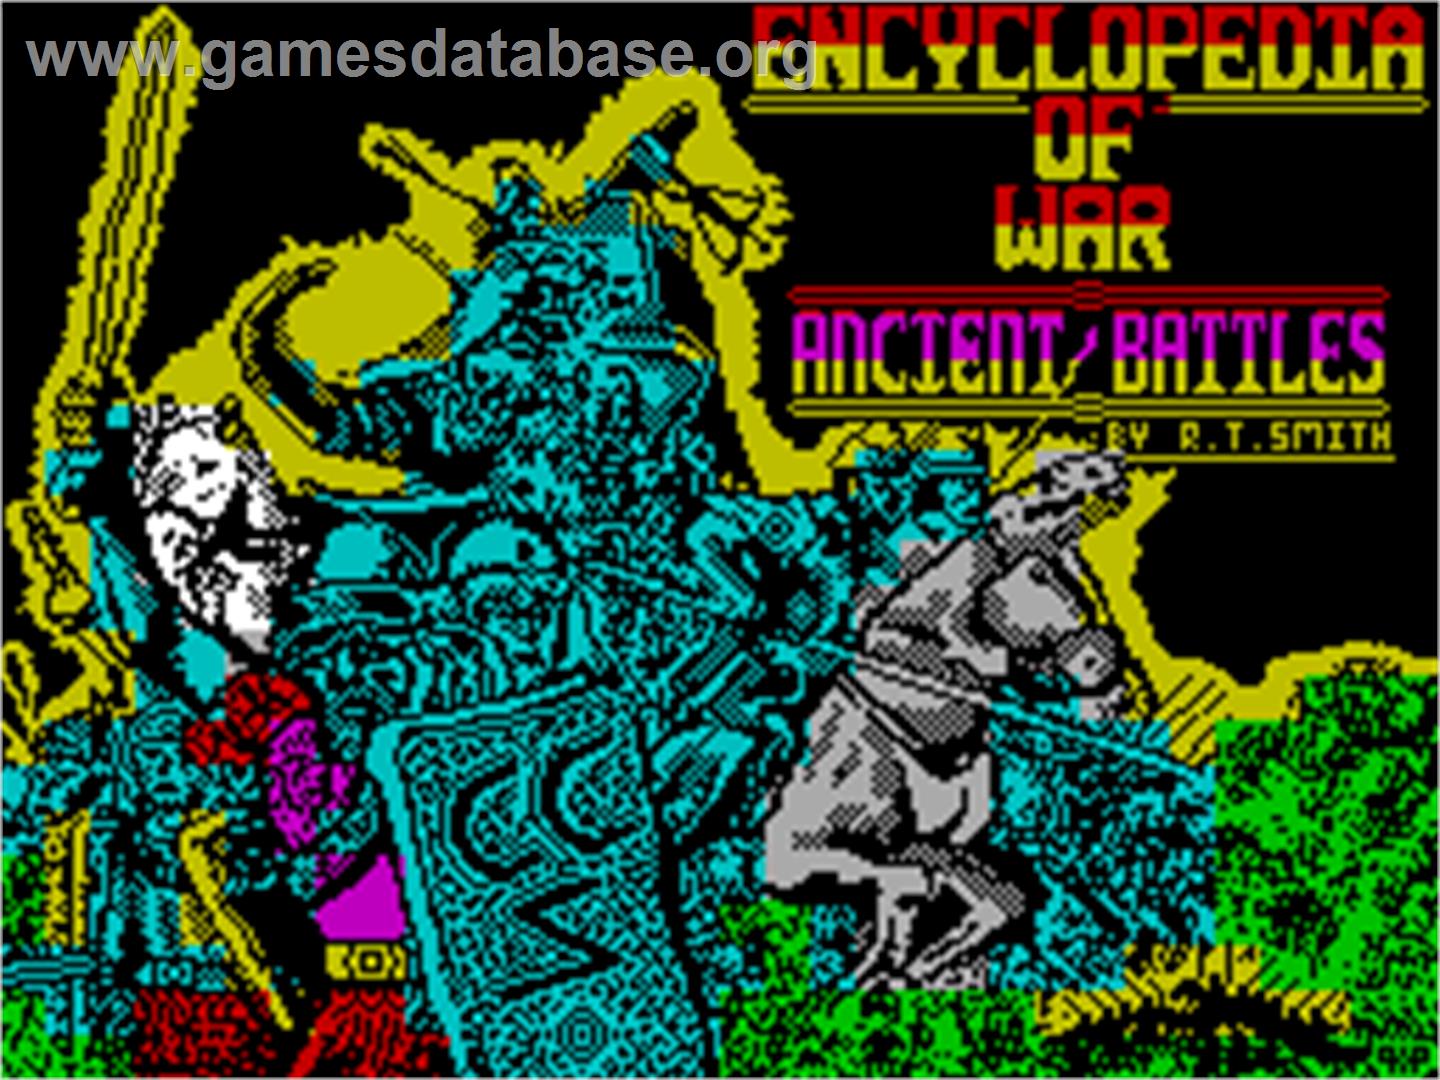 Encyclopedia of War: Ancient Battles - Sinclair ZX Spectrum - Artwork - Title Screen